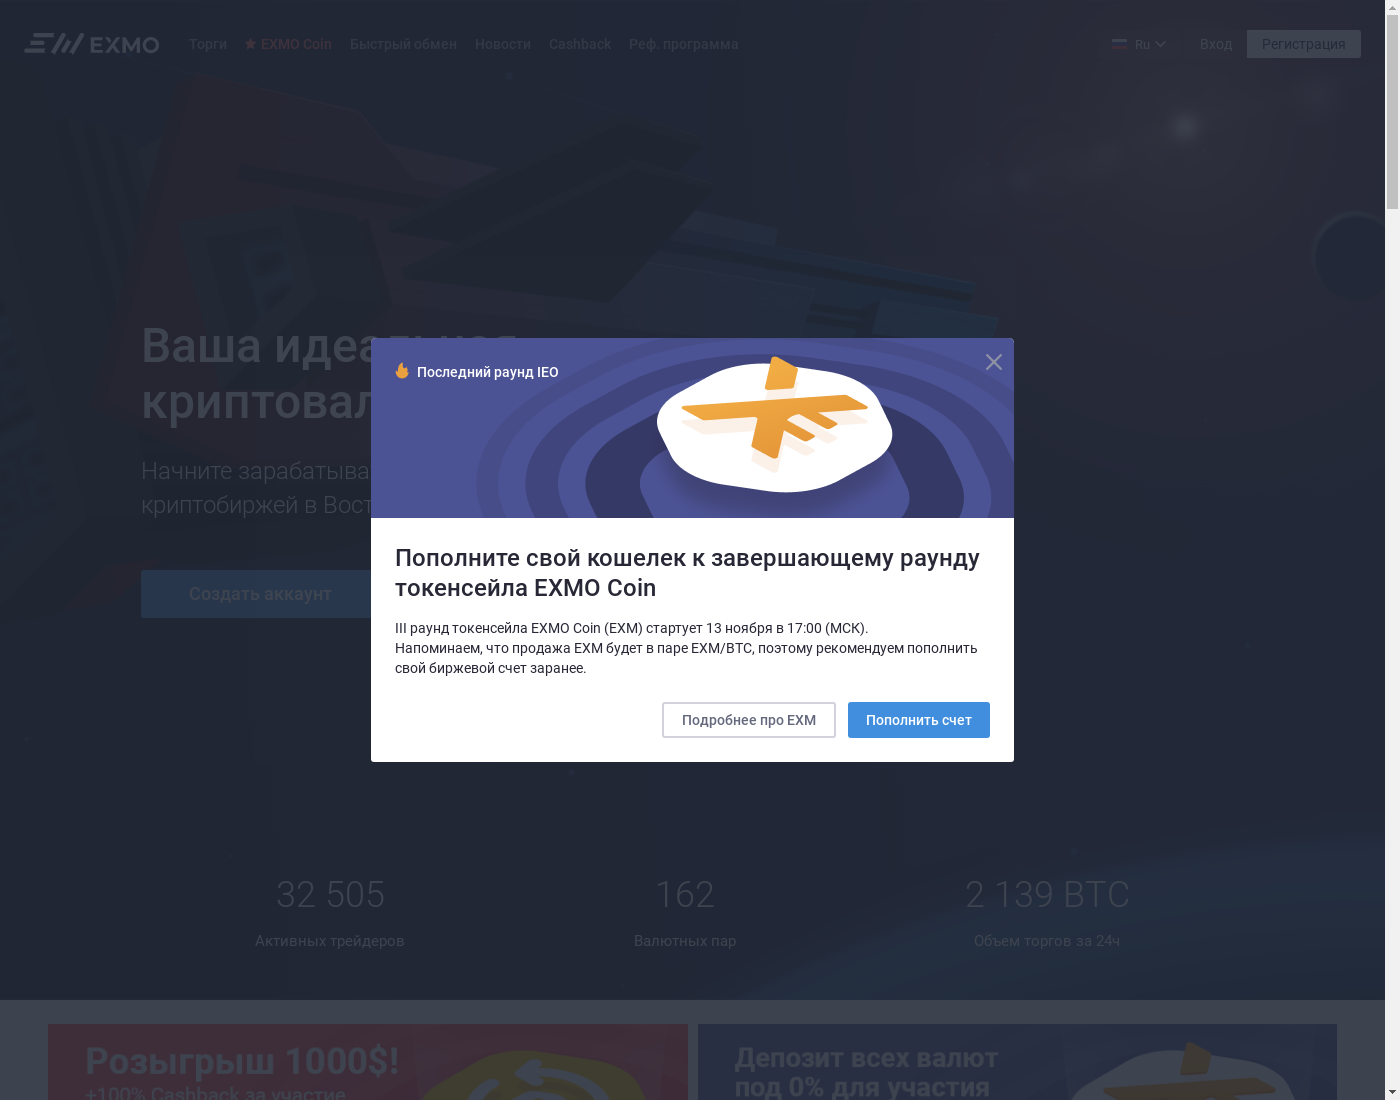 EXMO интерфейс пользователя: домашняя страничка на языке — Русский